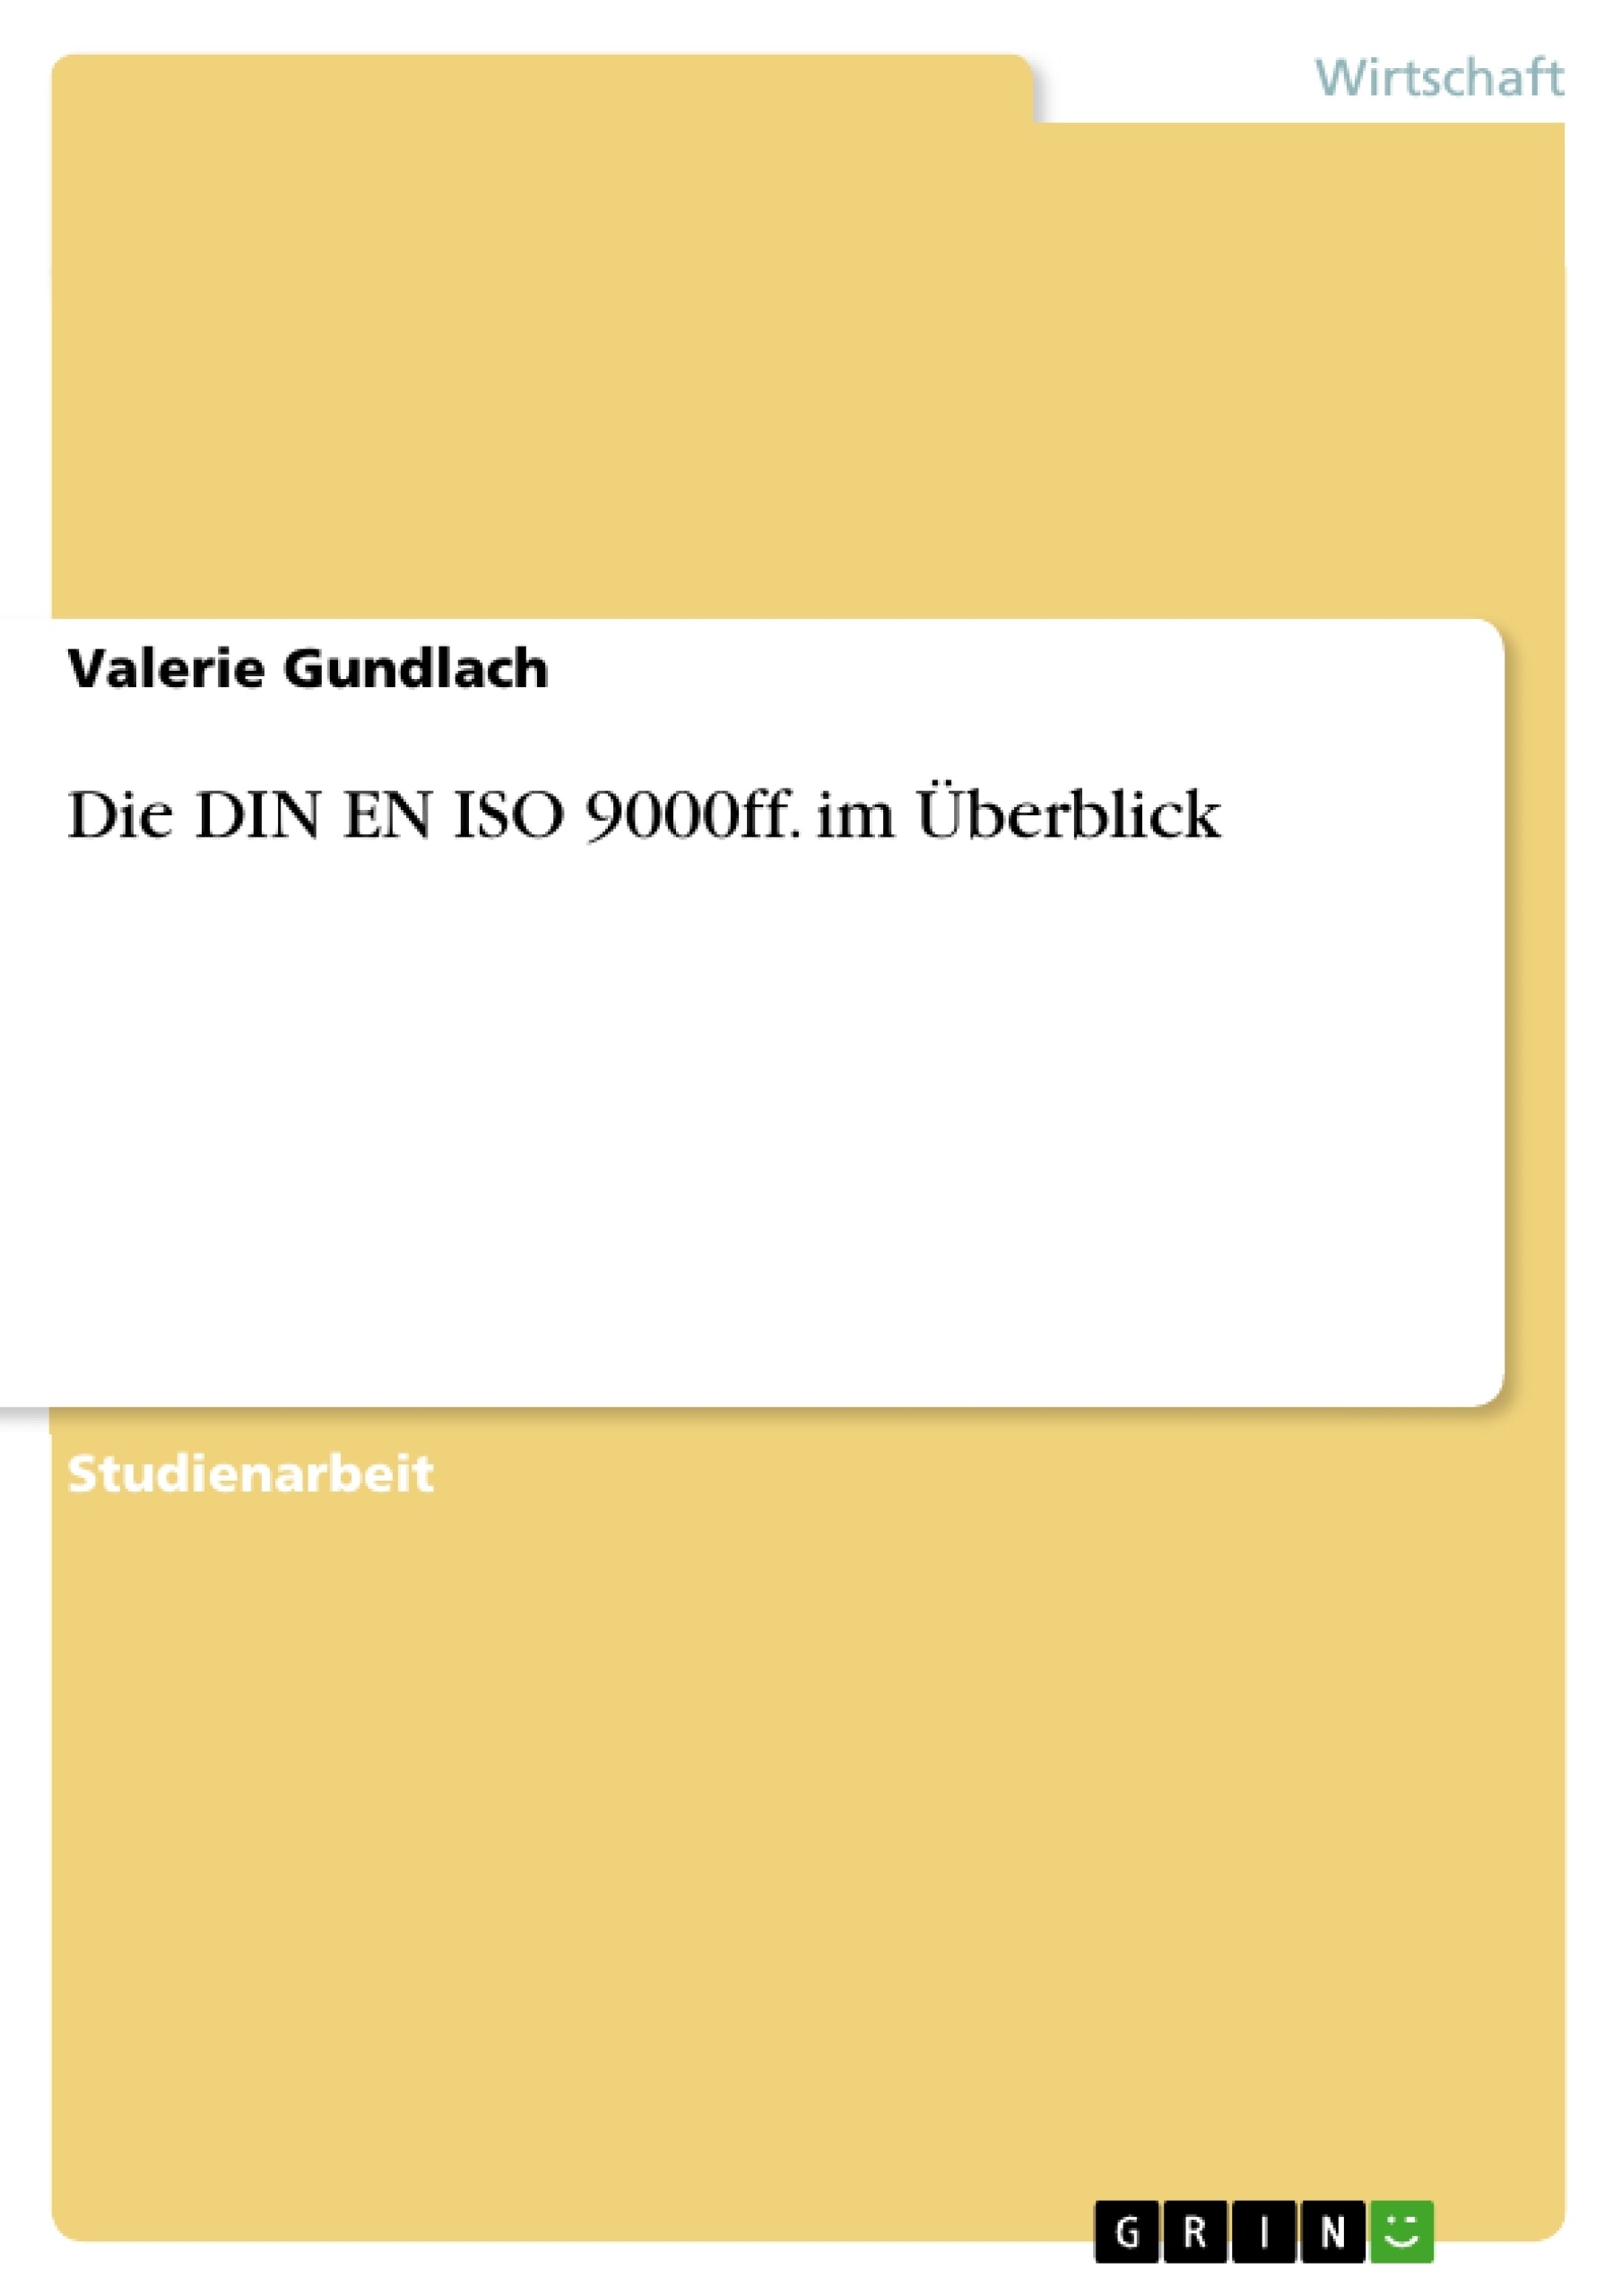 Title: Die DIN EN ISO 9000ff. im Überblick